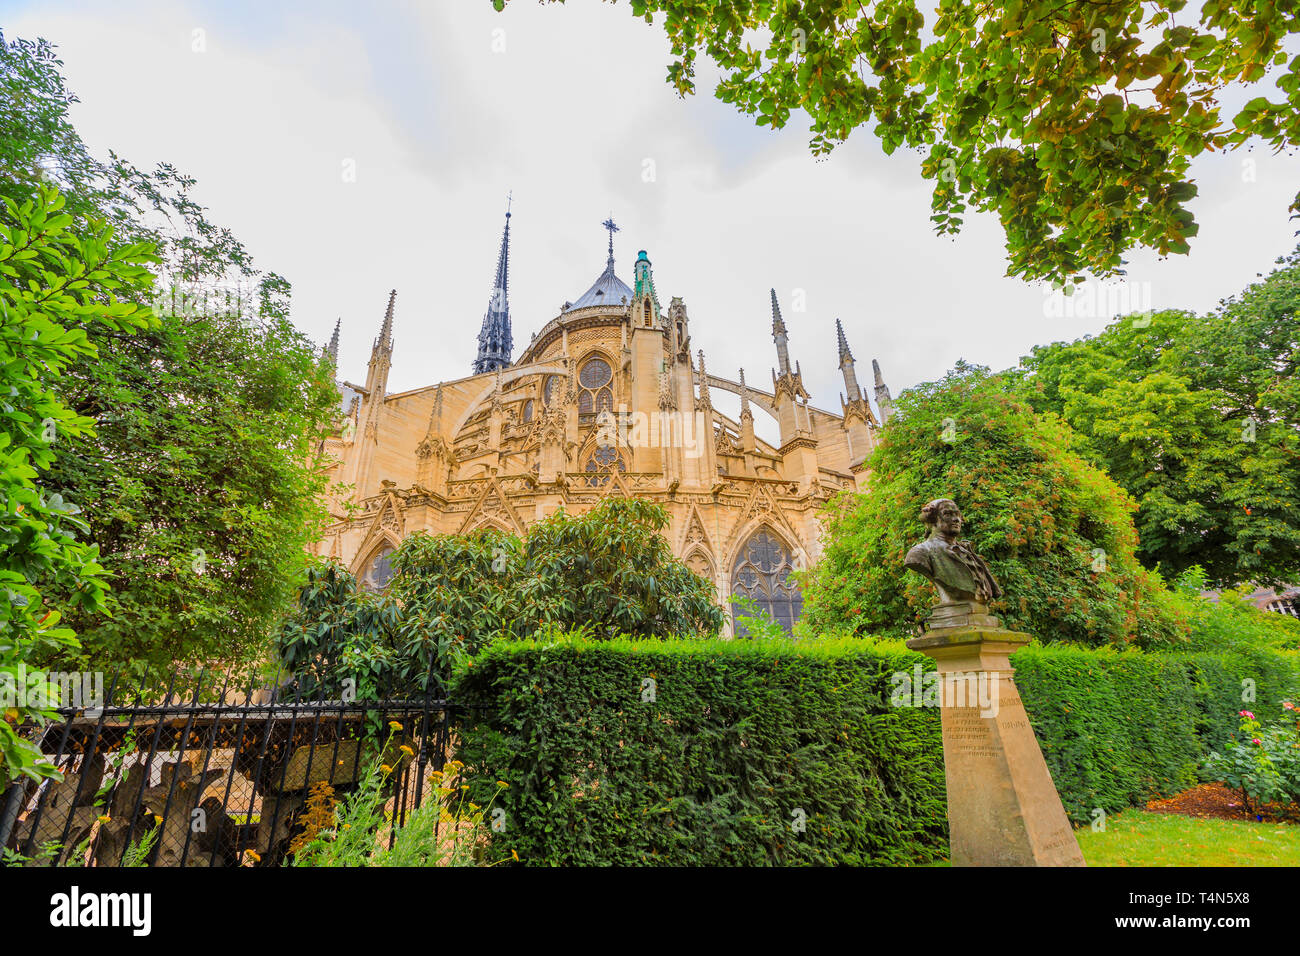 Rückseite Garten von Notre Dame de Paris, beliebte Sehenswürdigkeit und Kathedrale der Hauptstadt von Frankreich. Gotische französischer Architektur Unserer Lieben Frau von Paris. Stockfoto